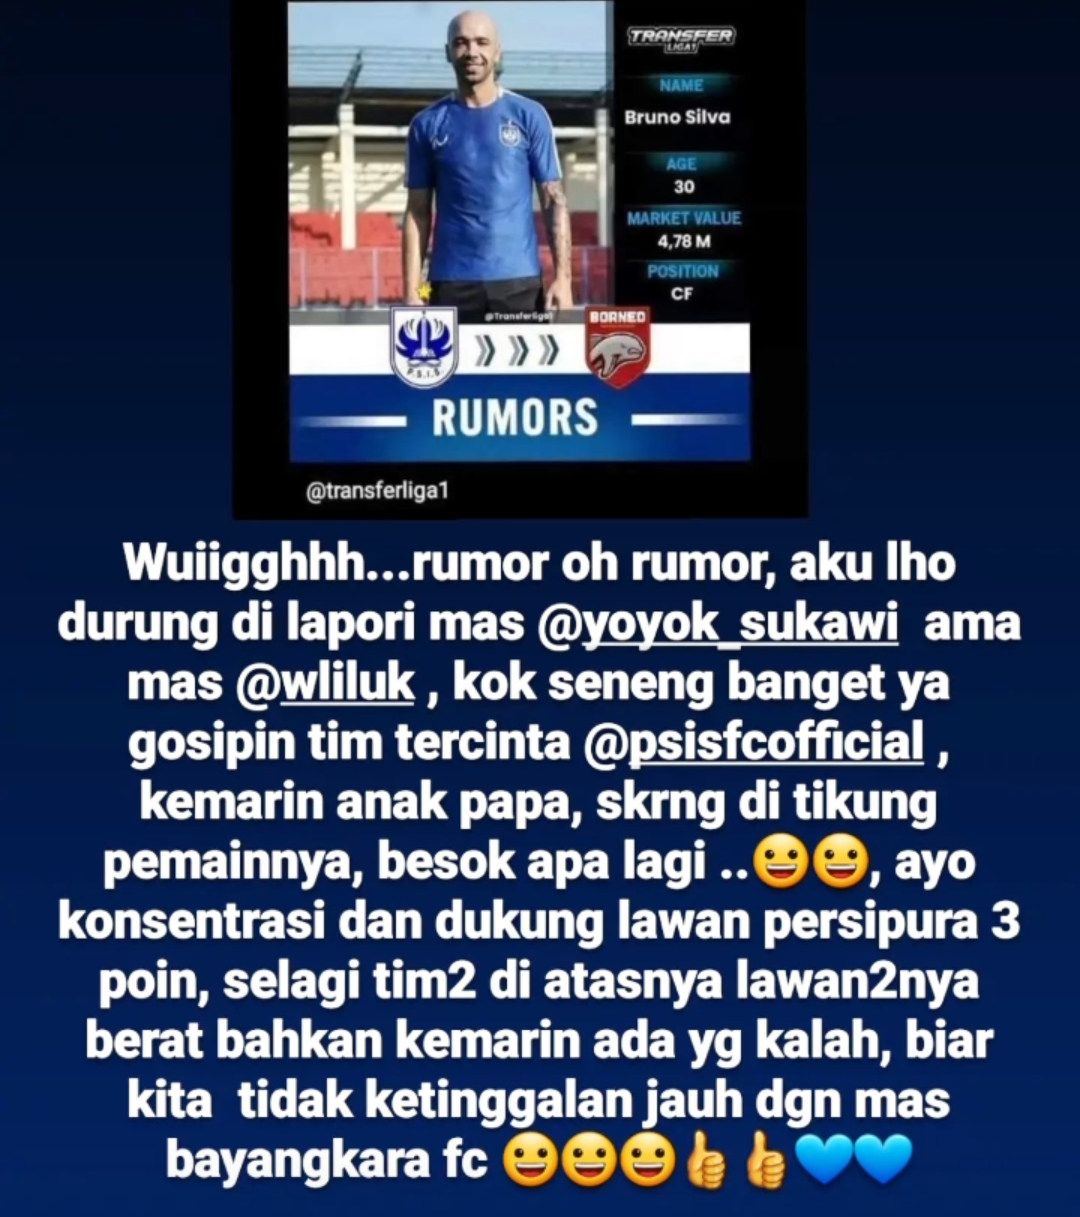 Rumor PSIS Semarang, Pemainnya Ditikung: Transfer Bruno Silva ke Borneo FC Rp 4,78 Miliar